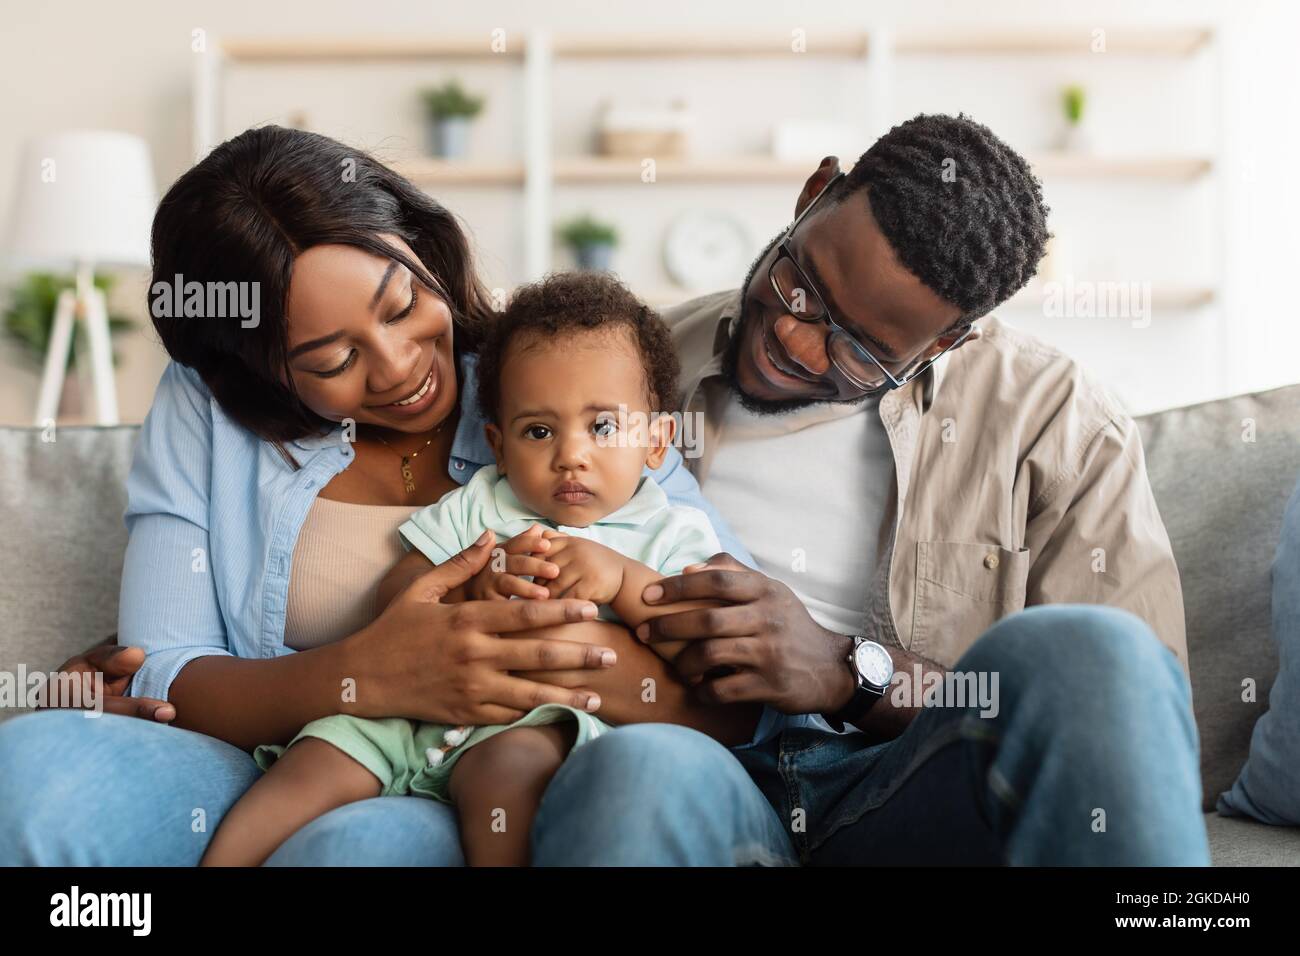 Portrait de famille noire heureuse souriant regardant l'enfant Banque D'Images